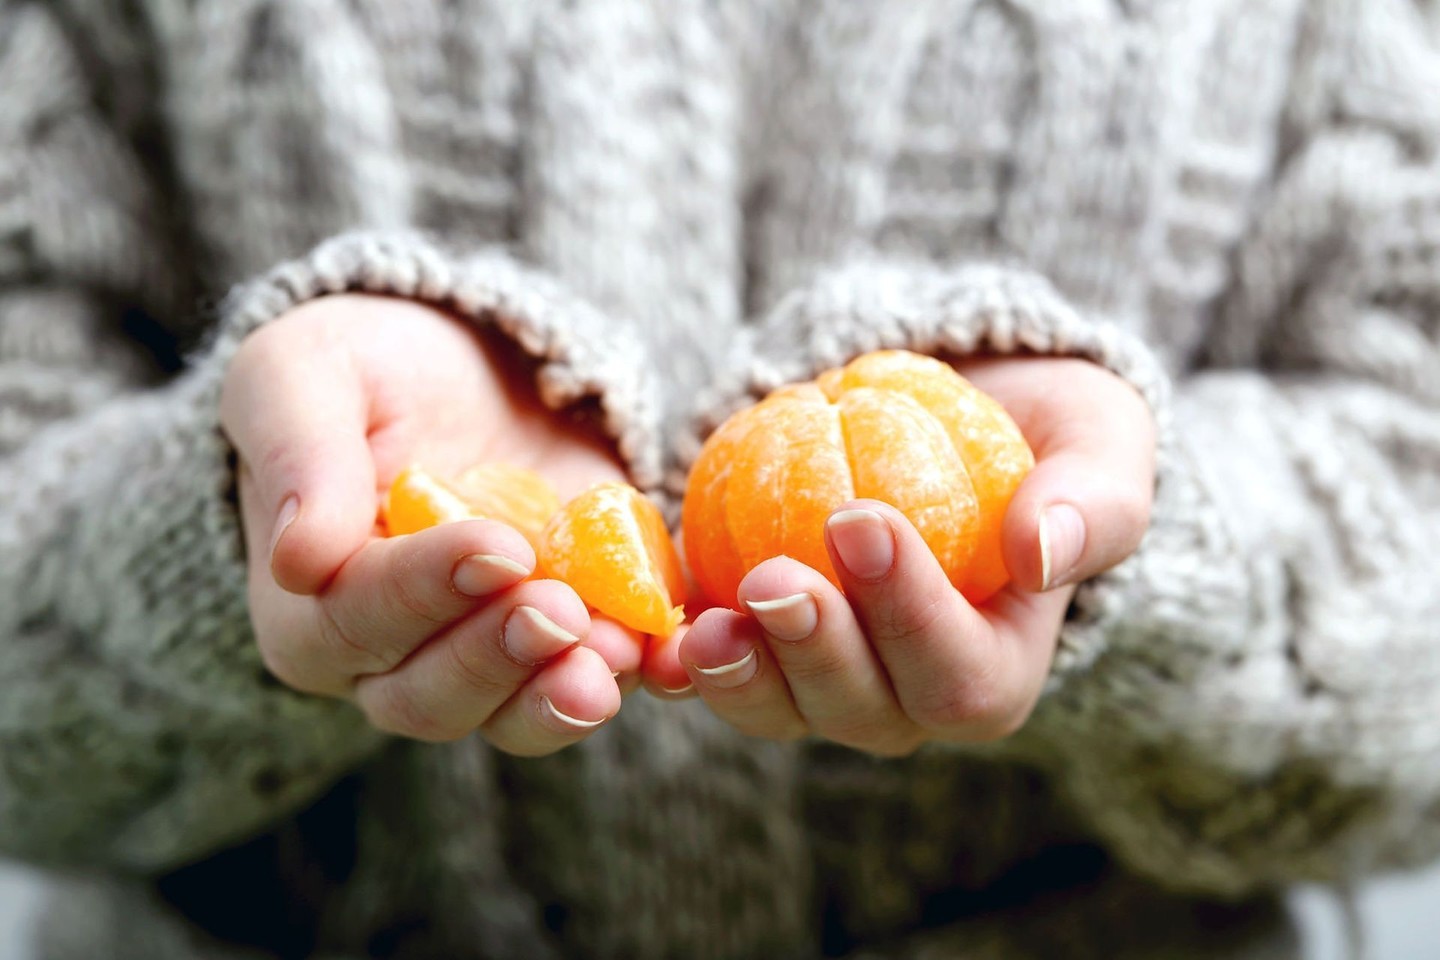 Patrynus mandarino žievelę, iš jos išsiskiria eteriniai aliejai, kurie ir pasižymi įvairiomis sveikatinančiomis savybėmis.<br>123rf nuotr.